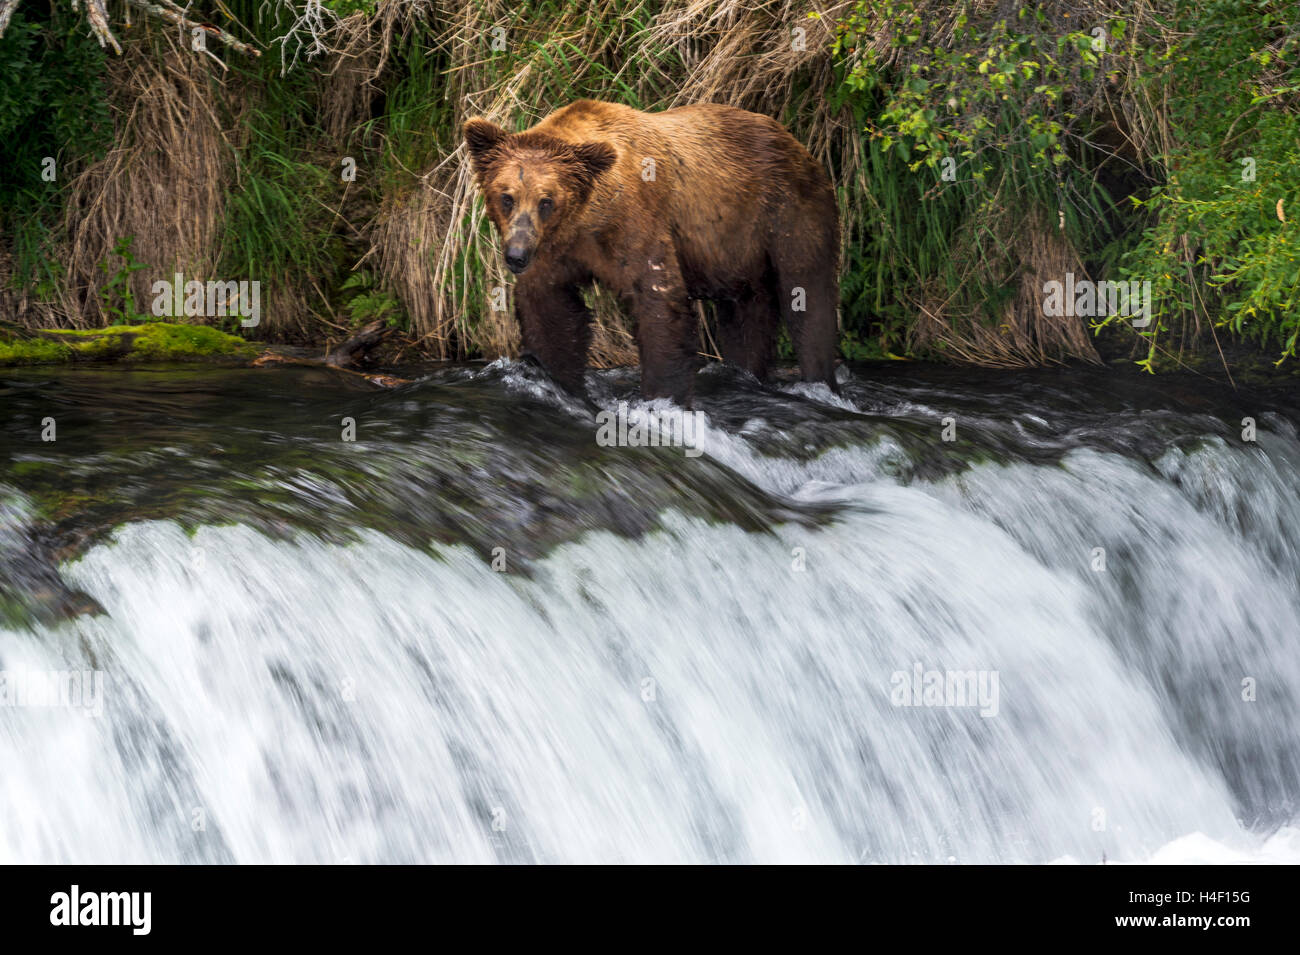 La chasse à l'ours brun du saumon dans la rivière, Brooks River, Katmai National Park, Alaska Banque D'Images